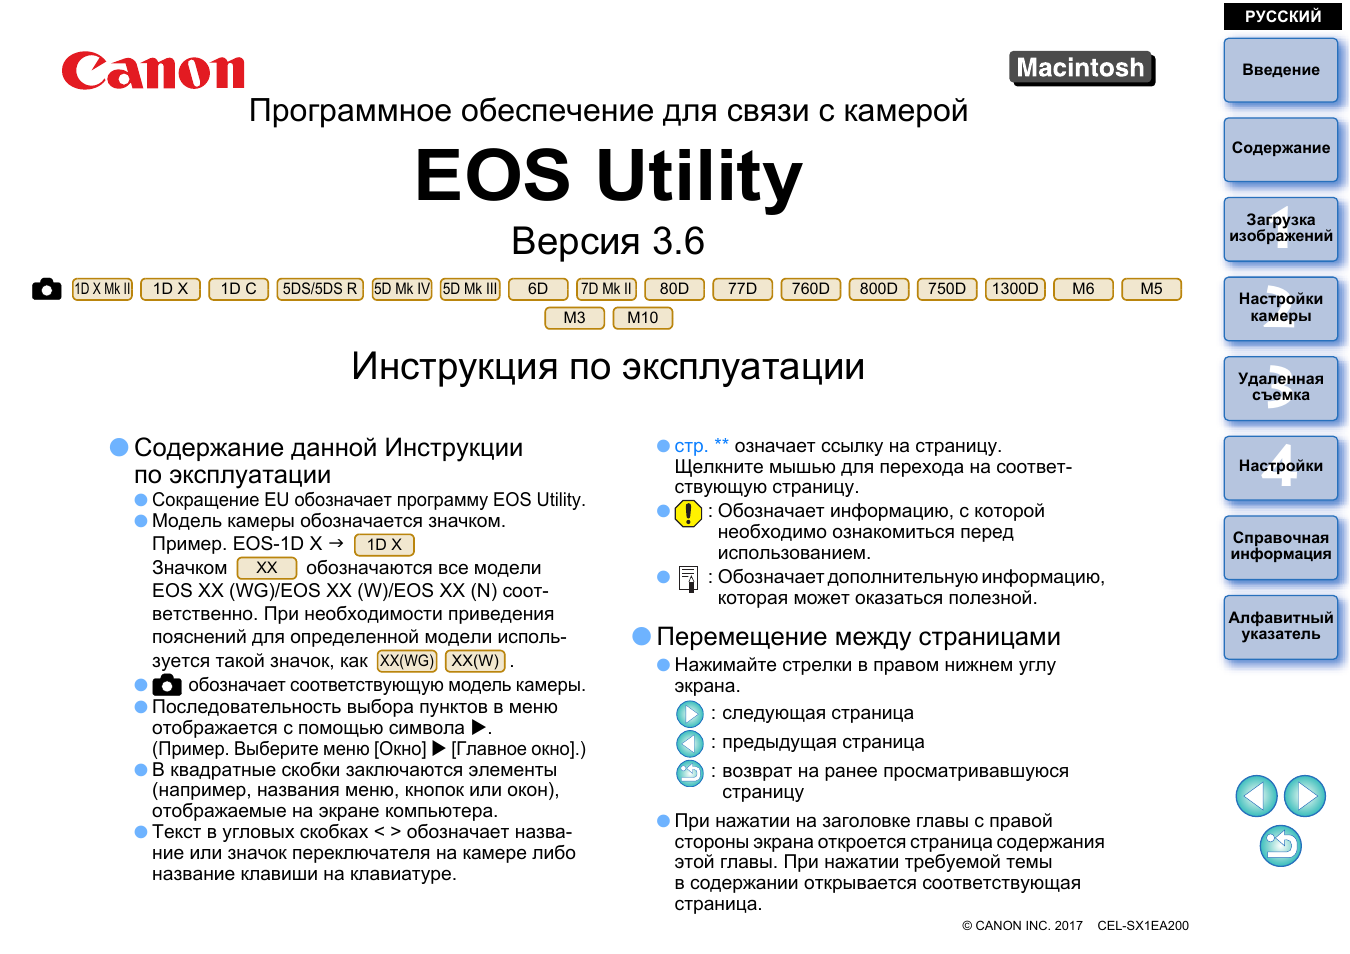 Инструкция по эксплуатации Canon EOS Utility | 97 страниц